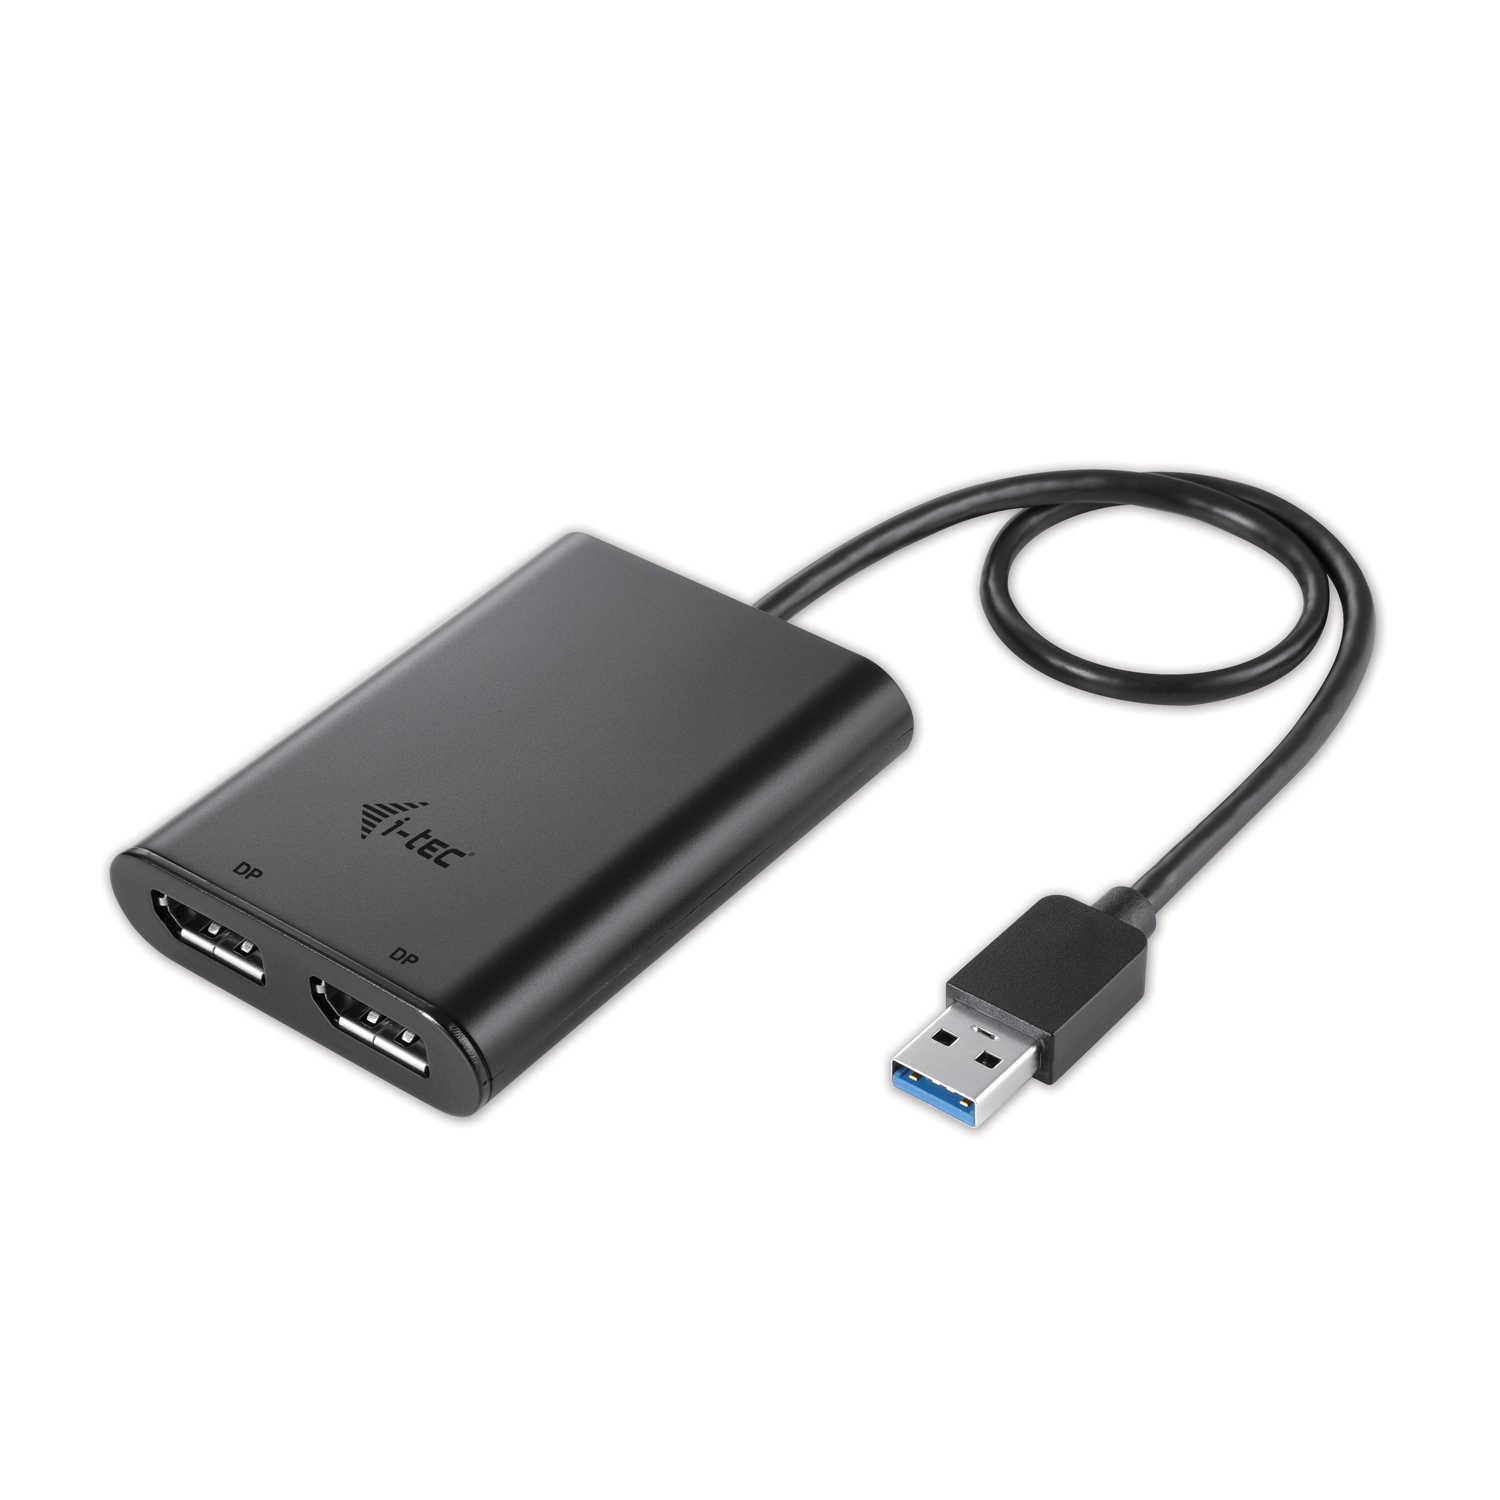 i-tec USB 3.0 Display Port 2x 4K Ultra HD Display Adapter